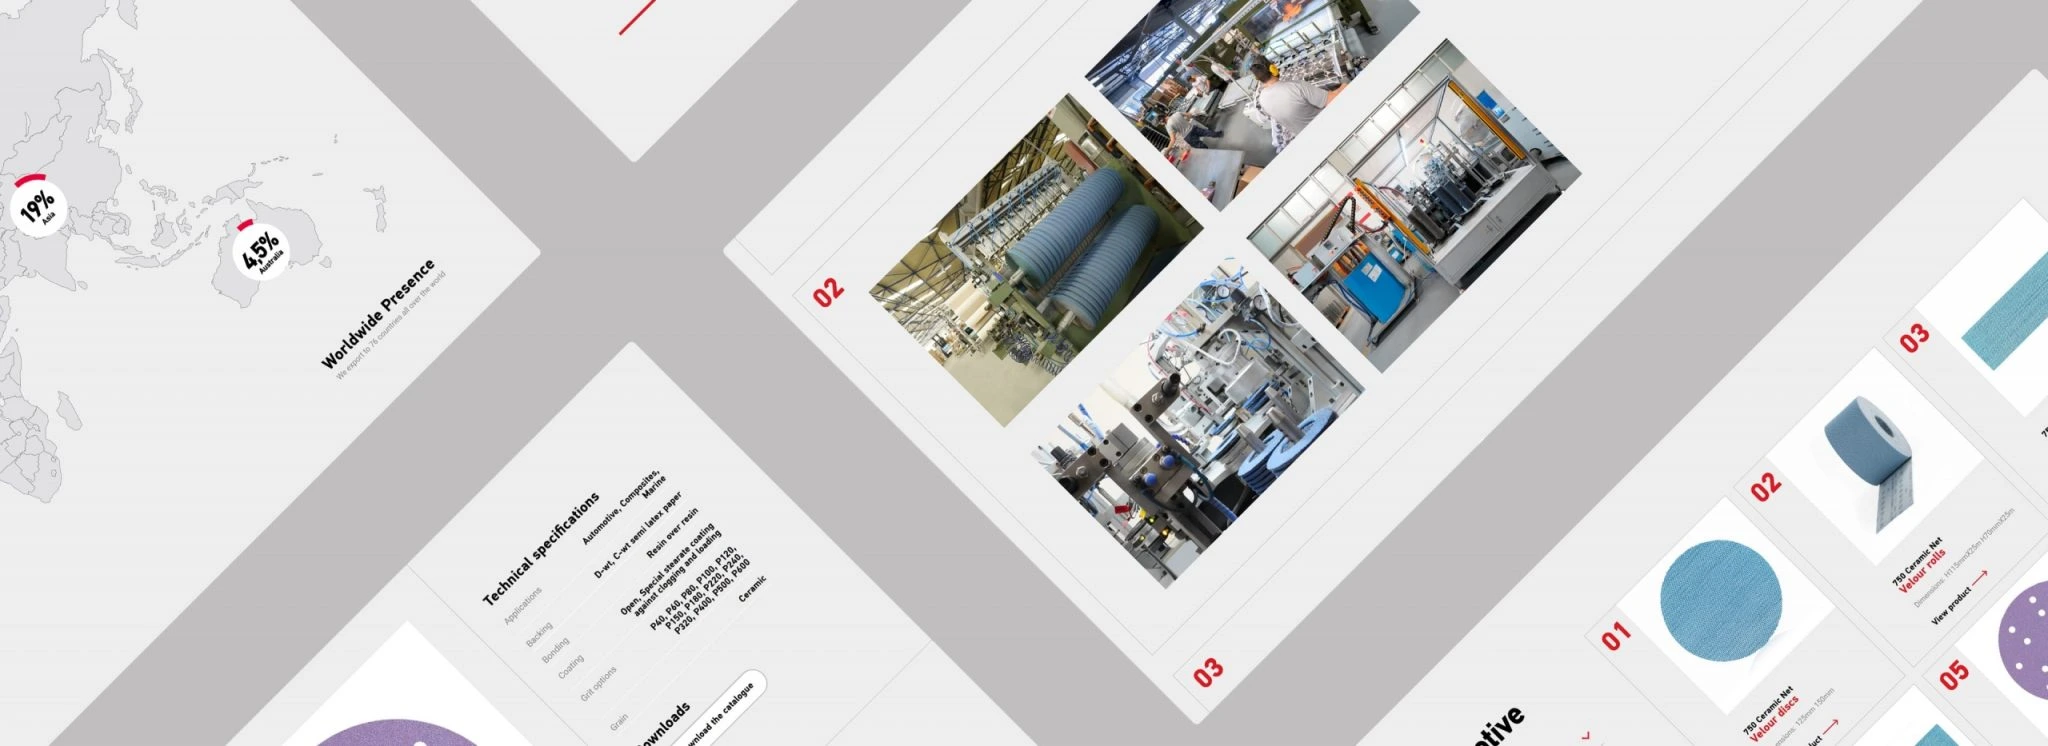 Σχεδίαση ιστοσελίδας smirdex - Βιομηχανία λειαντικών προϊόντων - Artware